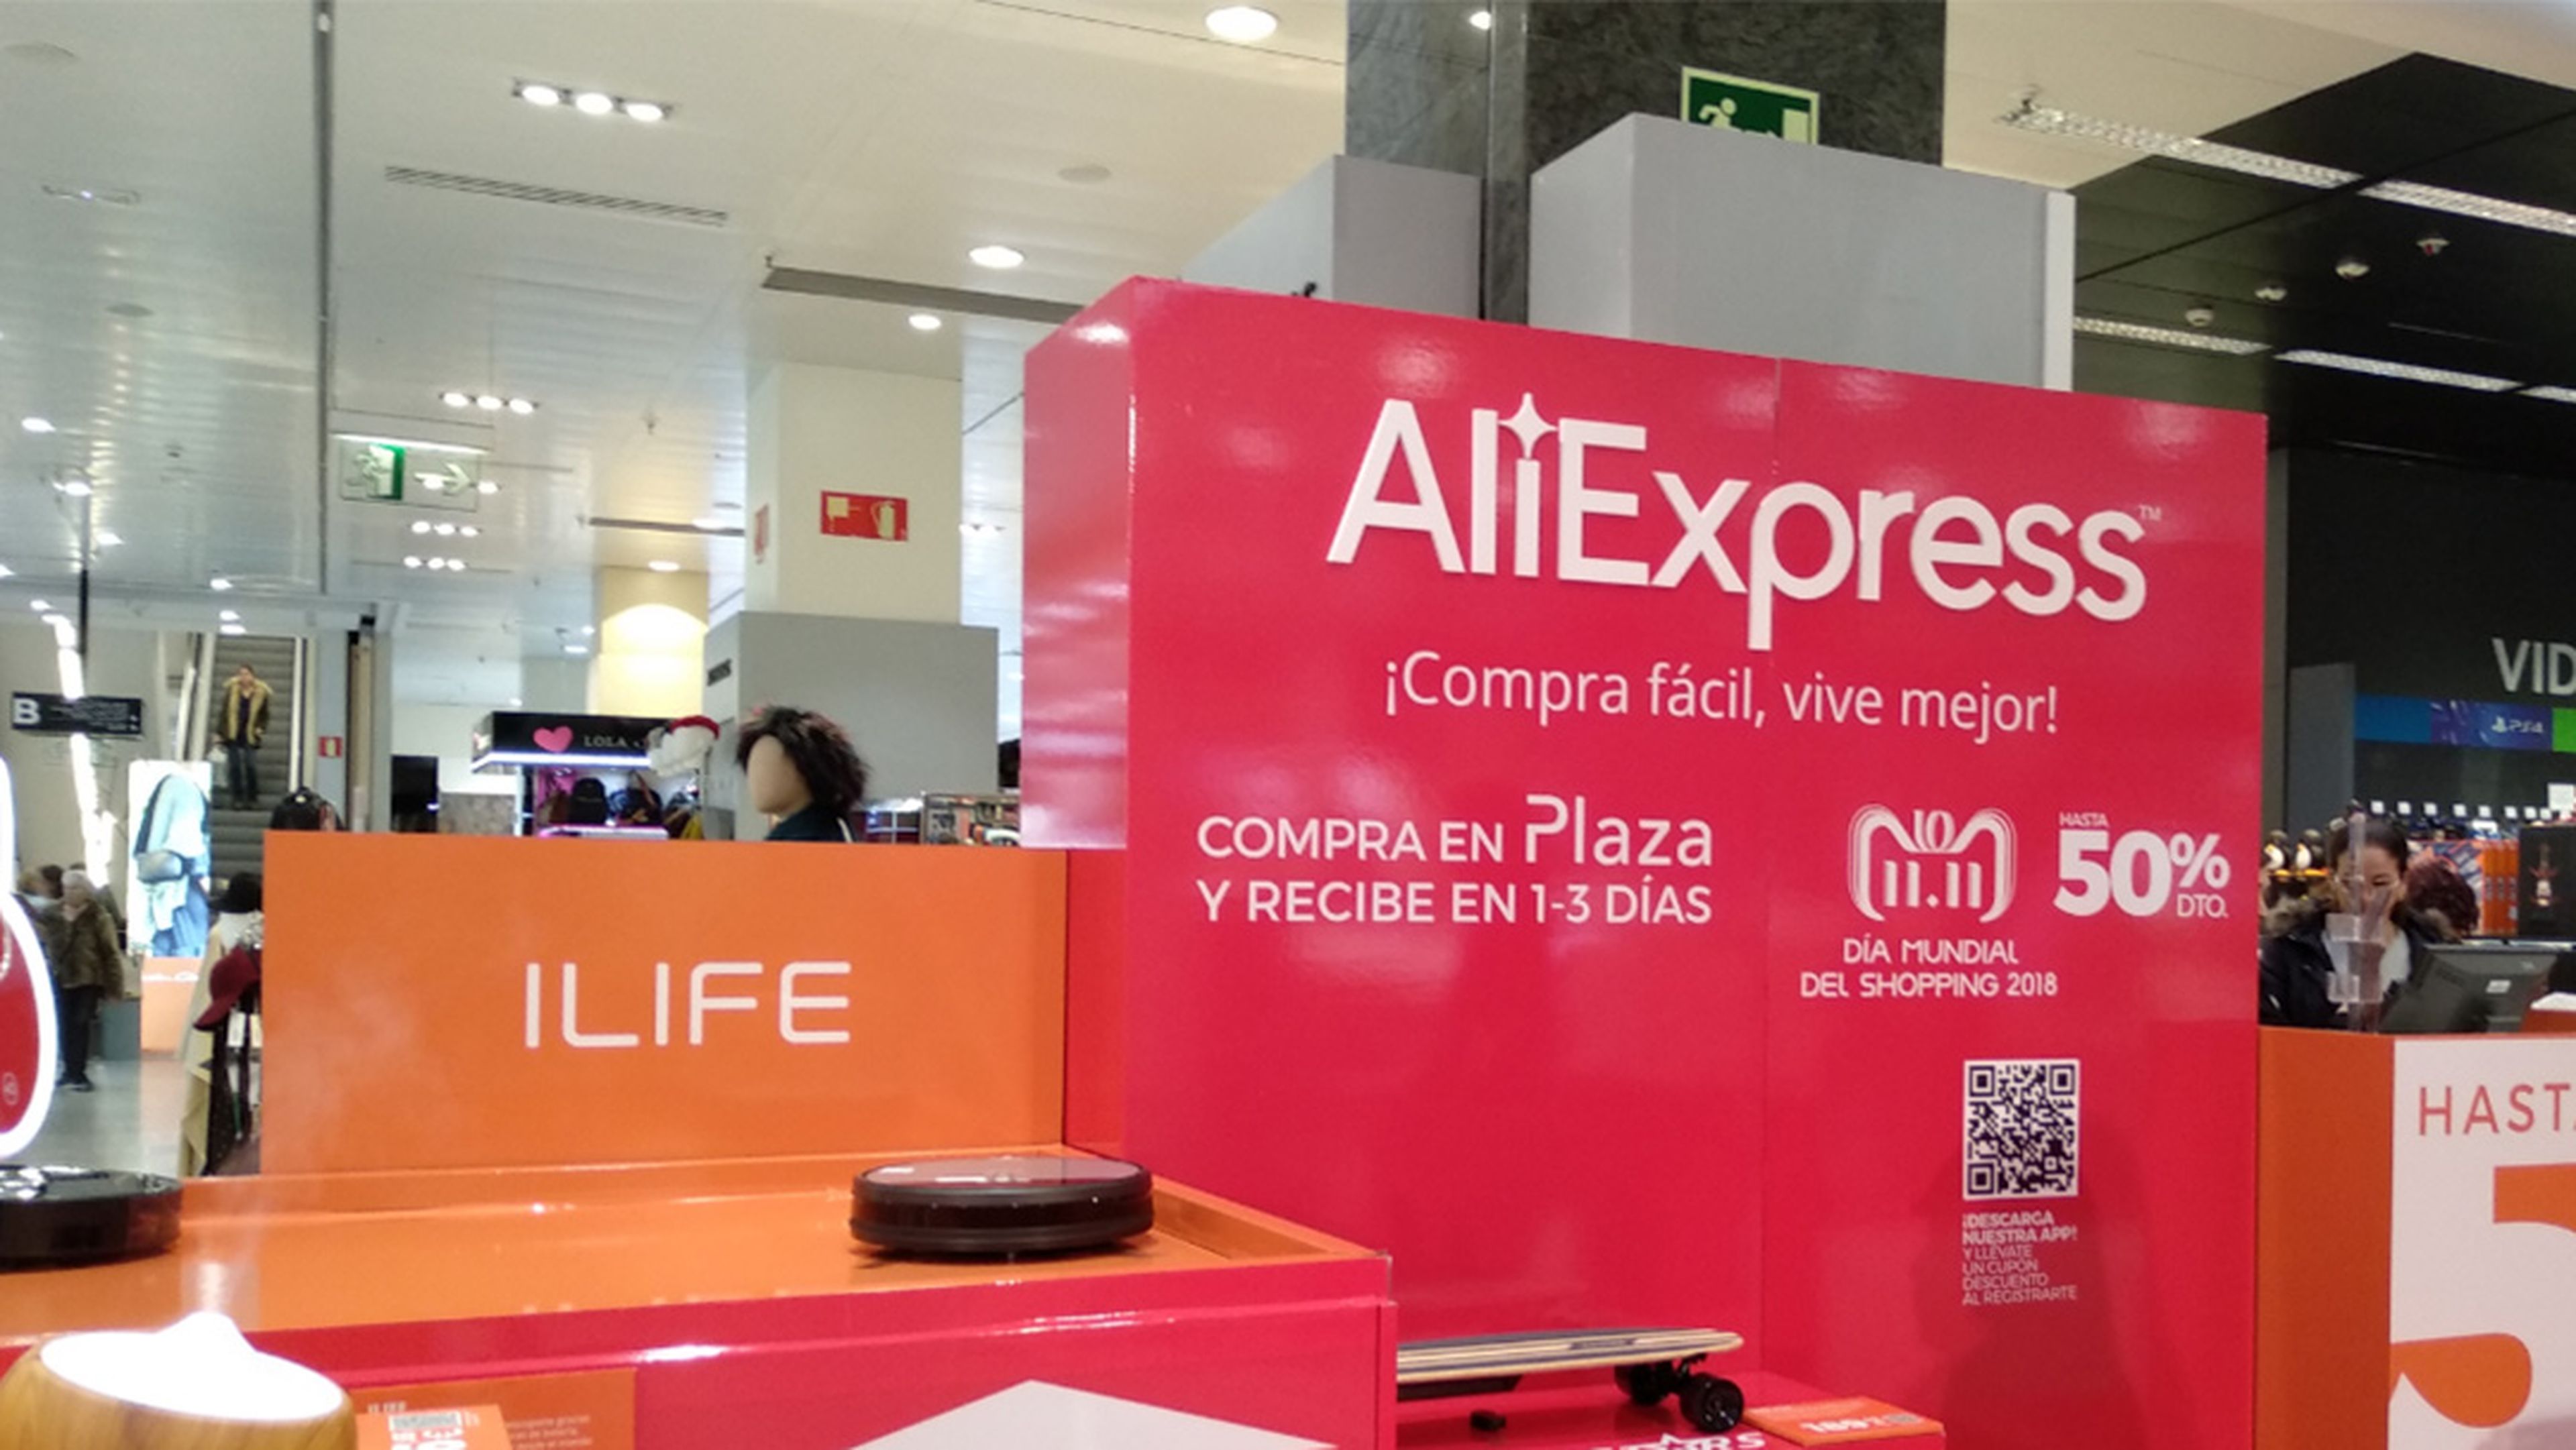 iLife en el 11.11 Día Mundial del Shopping 2018 de AliExpress